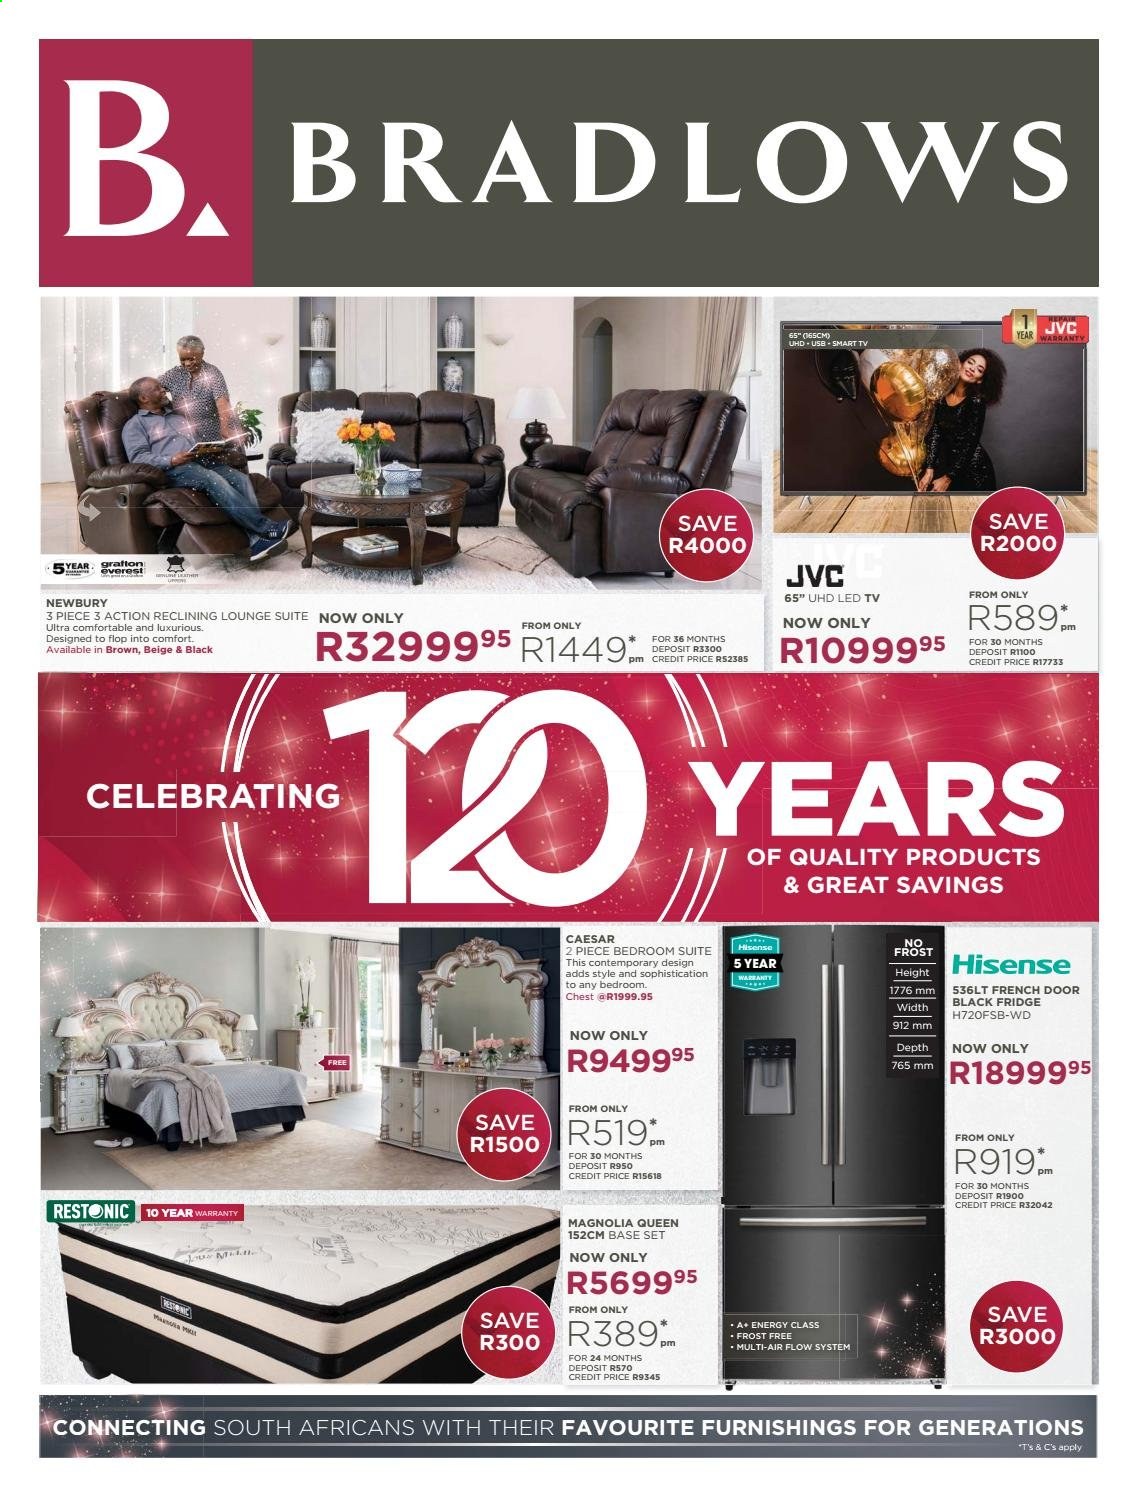 Bradlows specials - 05.03.2021 - 05.30.2021. 